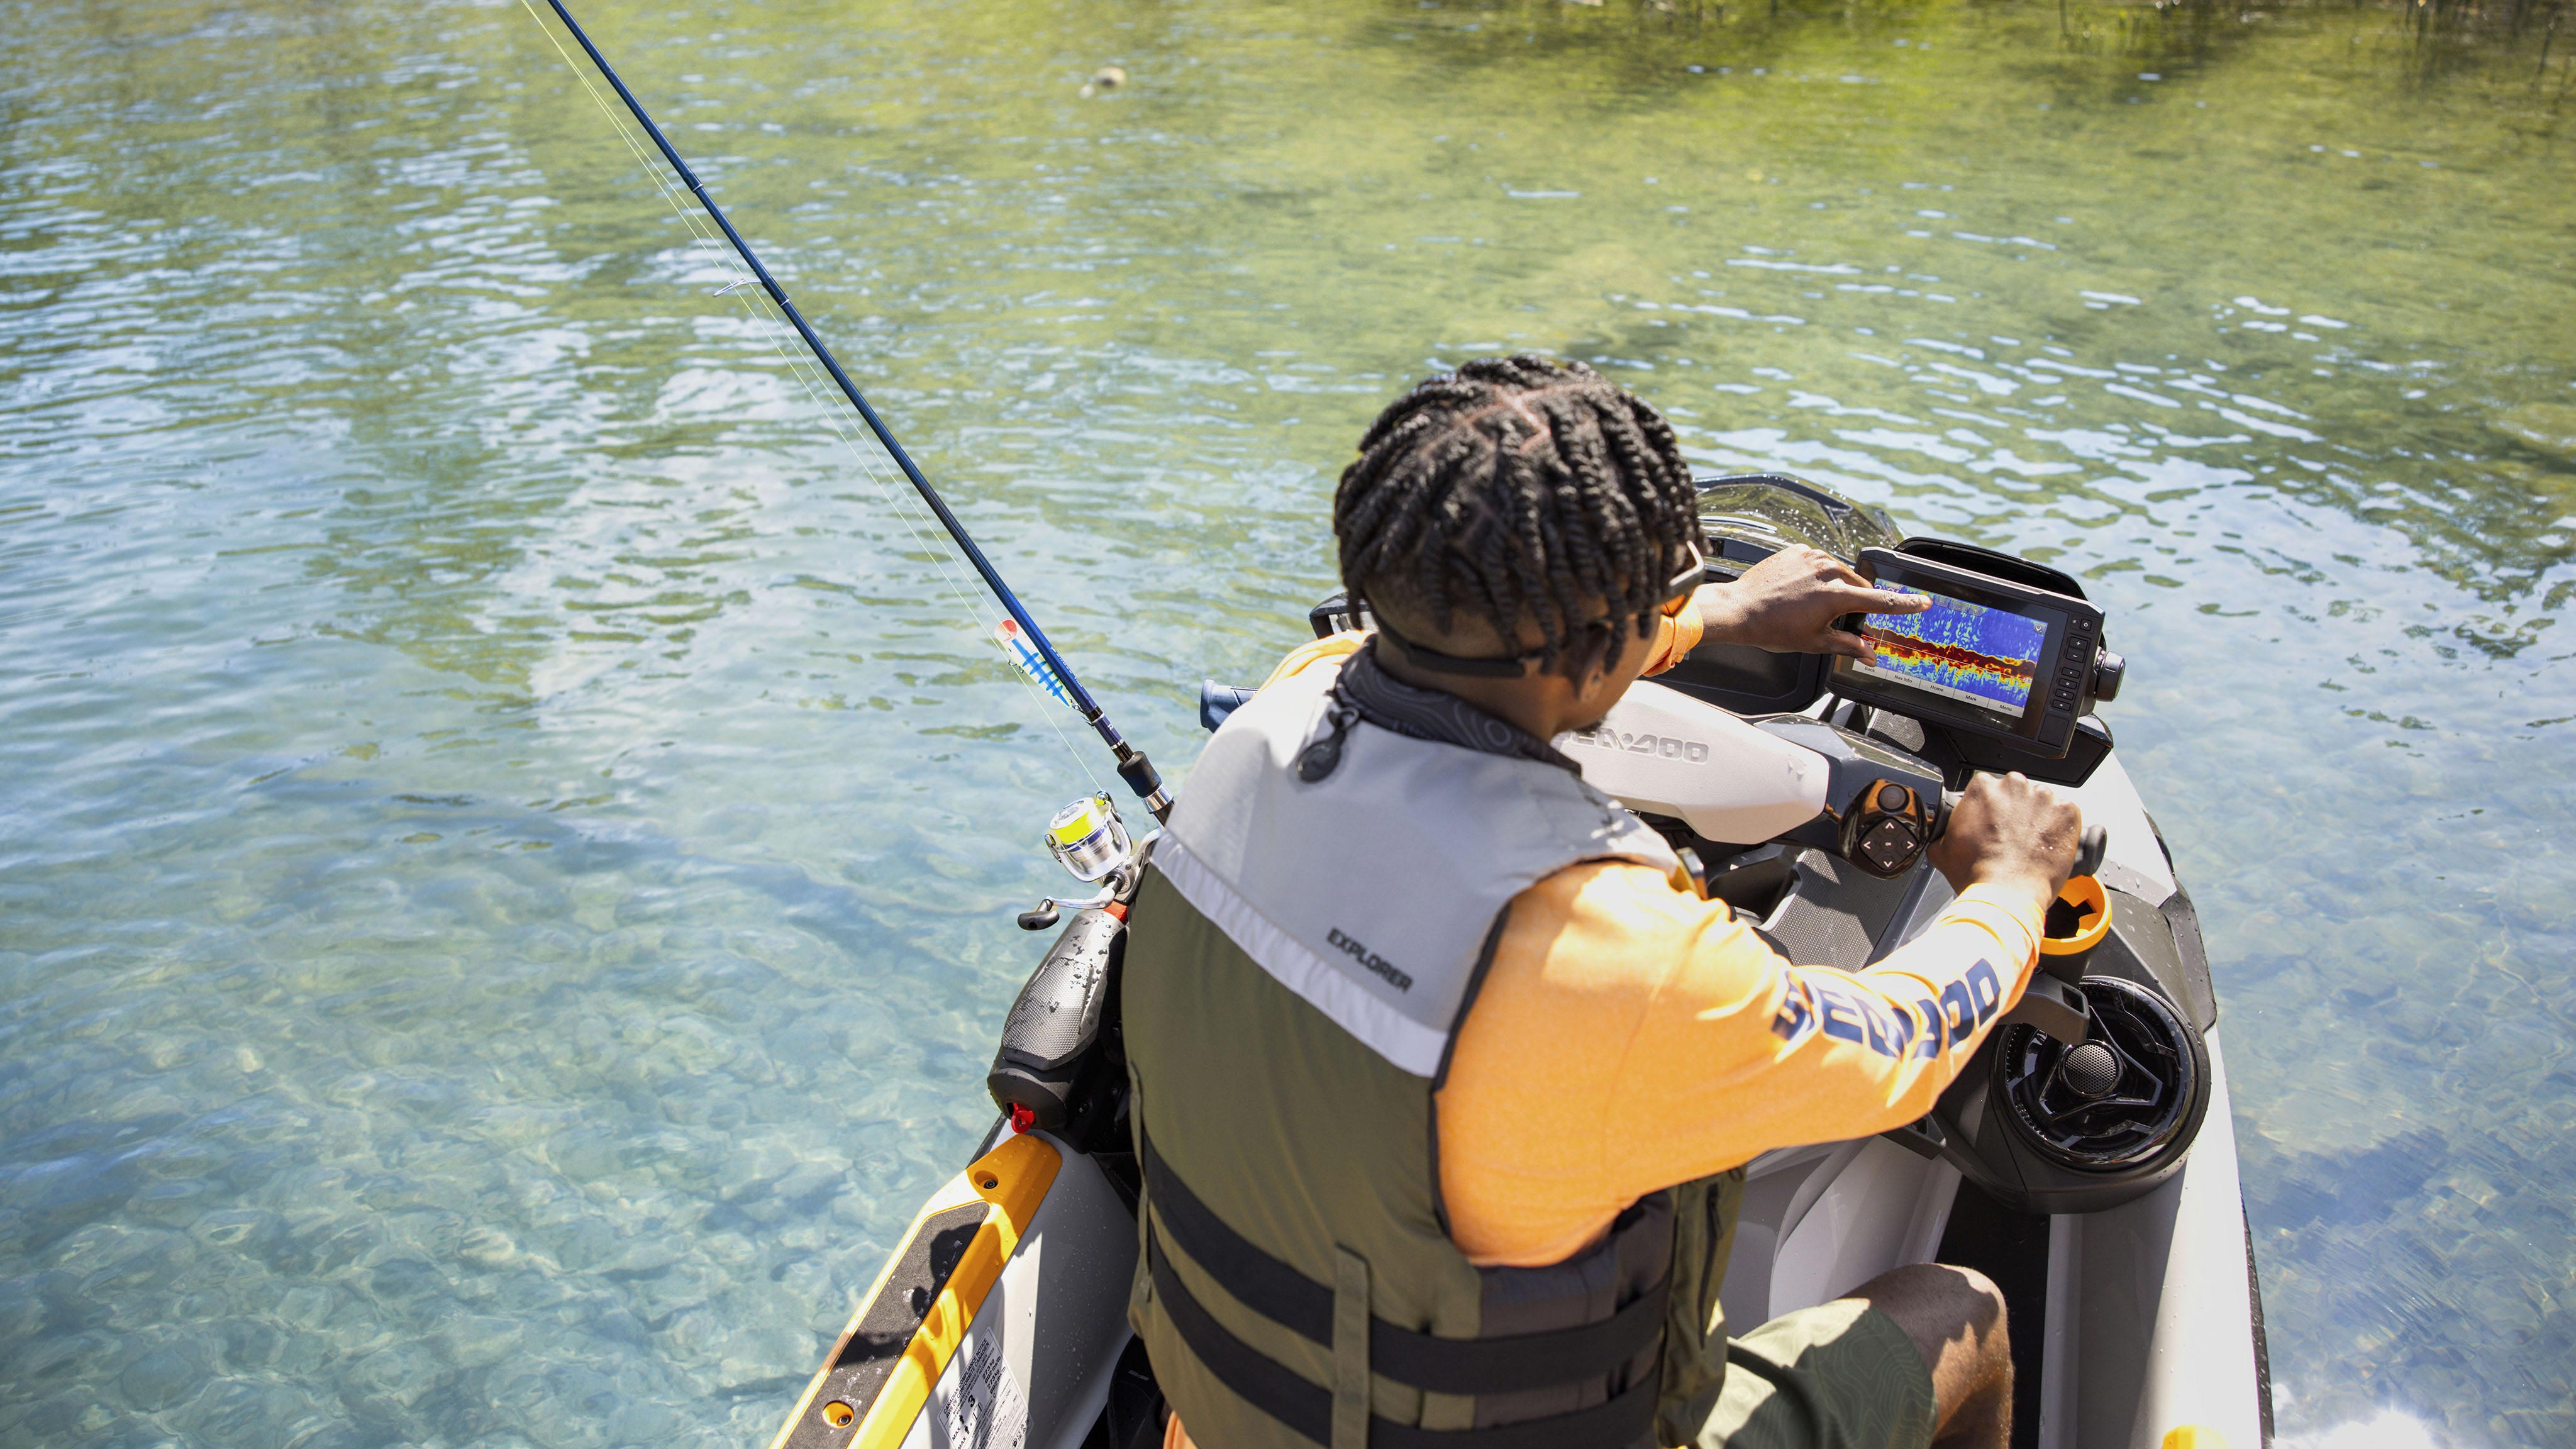 Garmin GPSと魚群探知機を使用している男性